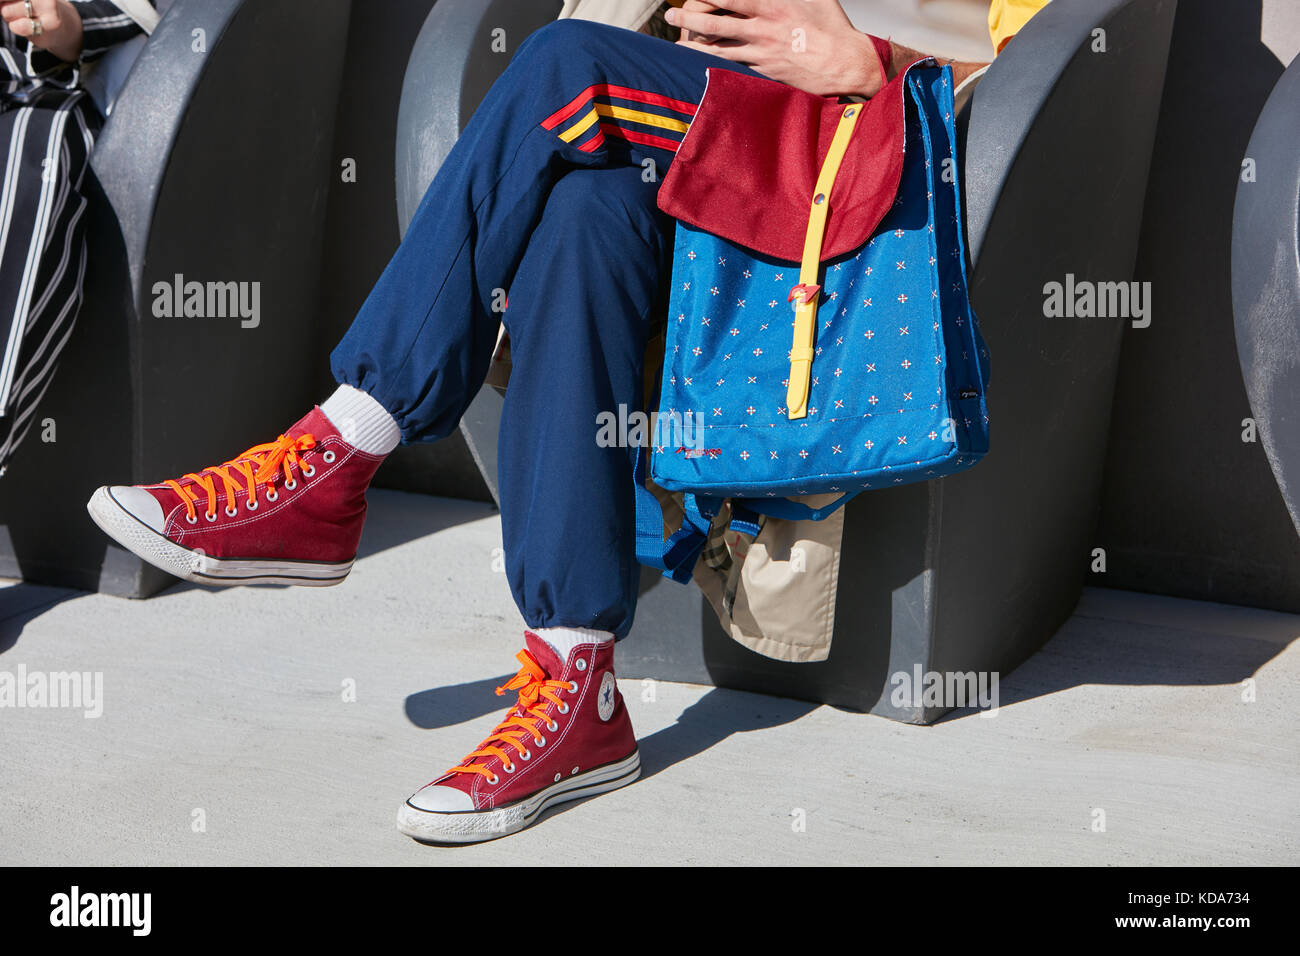 Milan - 20 septembre : l'homme natwee avec sac à dos rouge et bleu et rouge converse chaussures avant d'alberto zambelli fashion show, Milan Fashion week street sty Banque D'Images